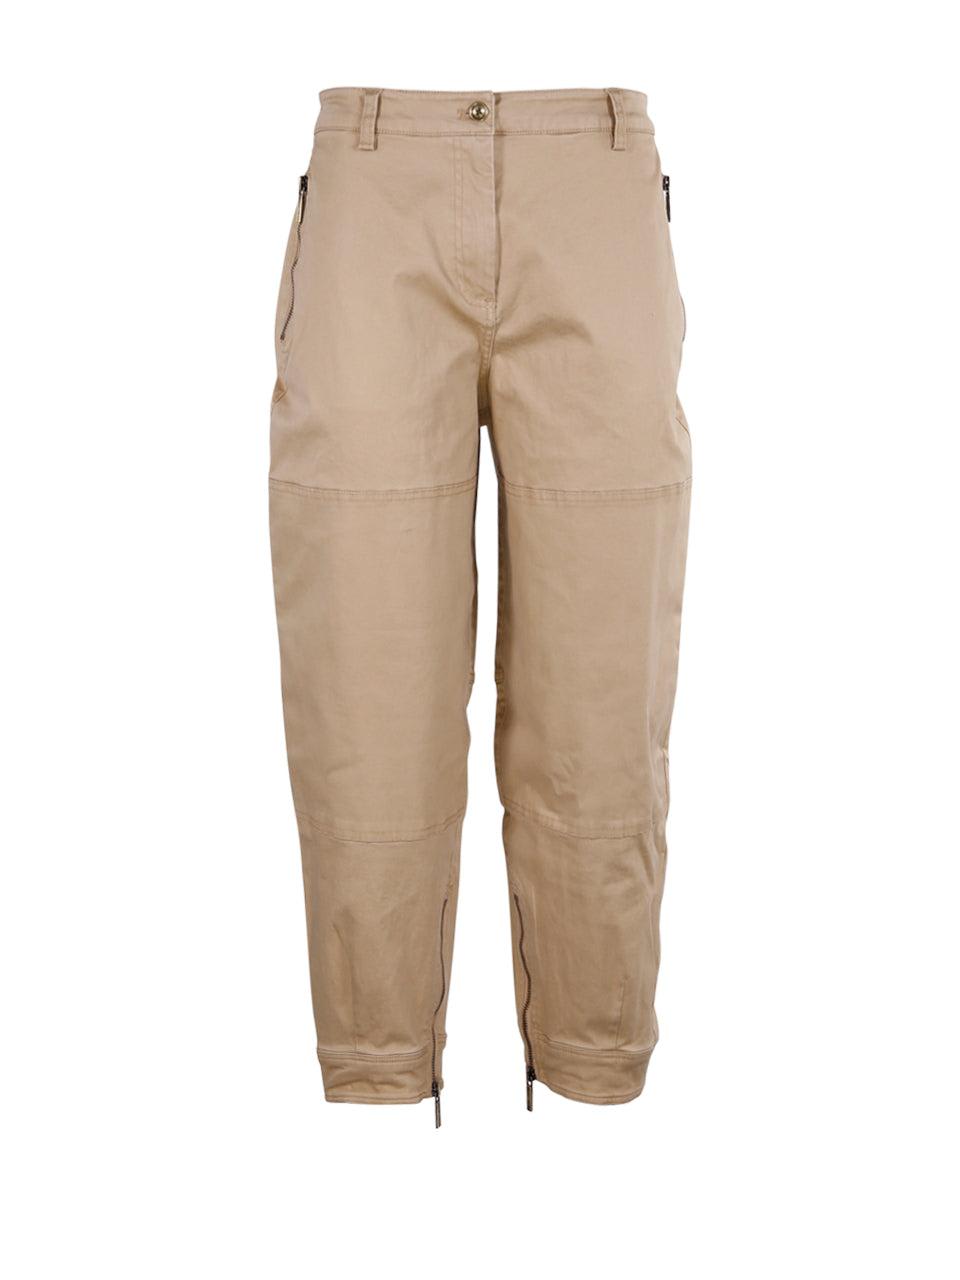 Michael Kors Zip Detailed Cargo Pants